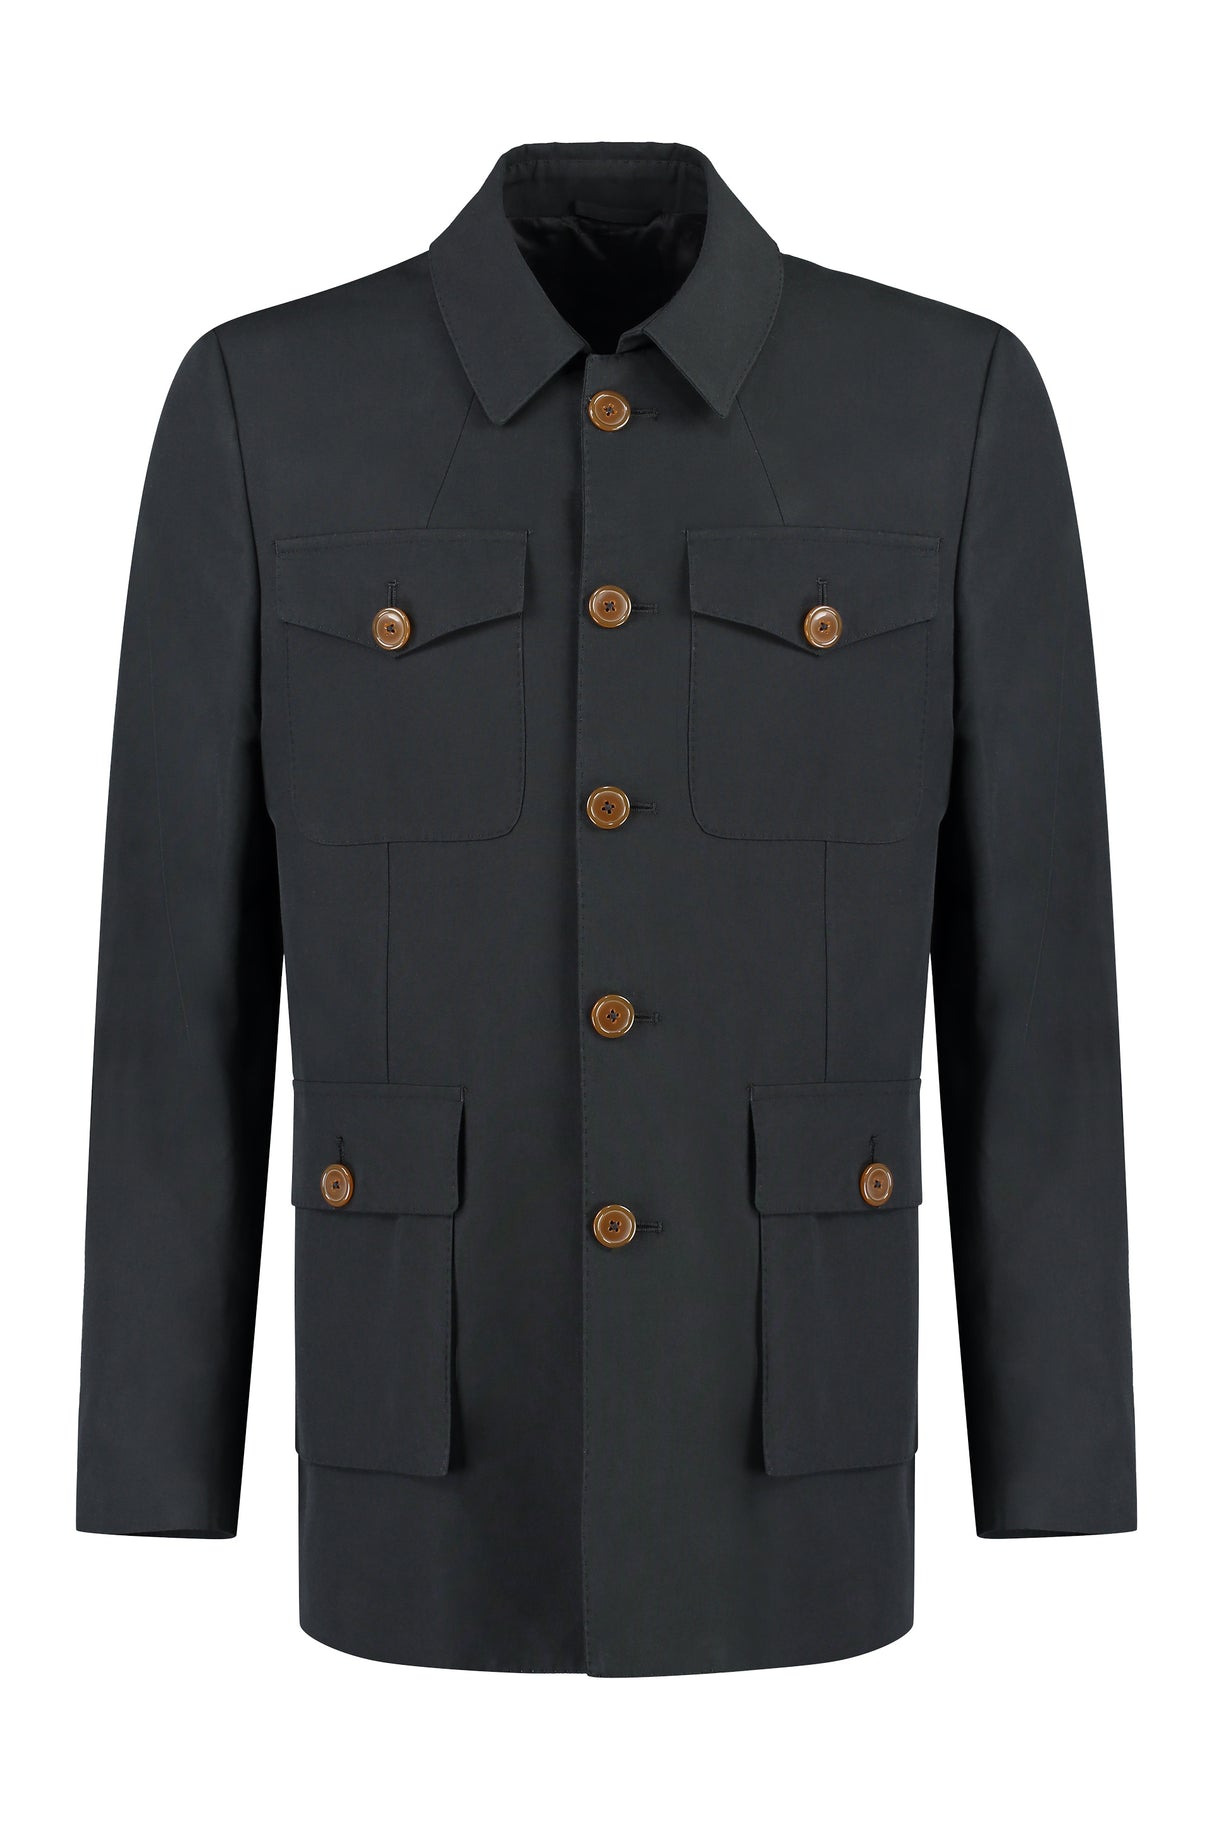 Áo khoác cotton nam phong cách với nút phía trước màu đen